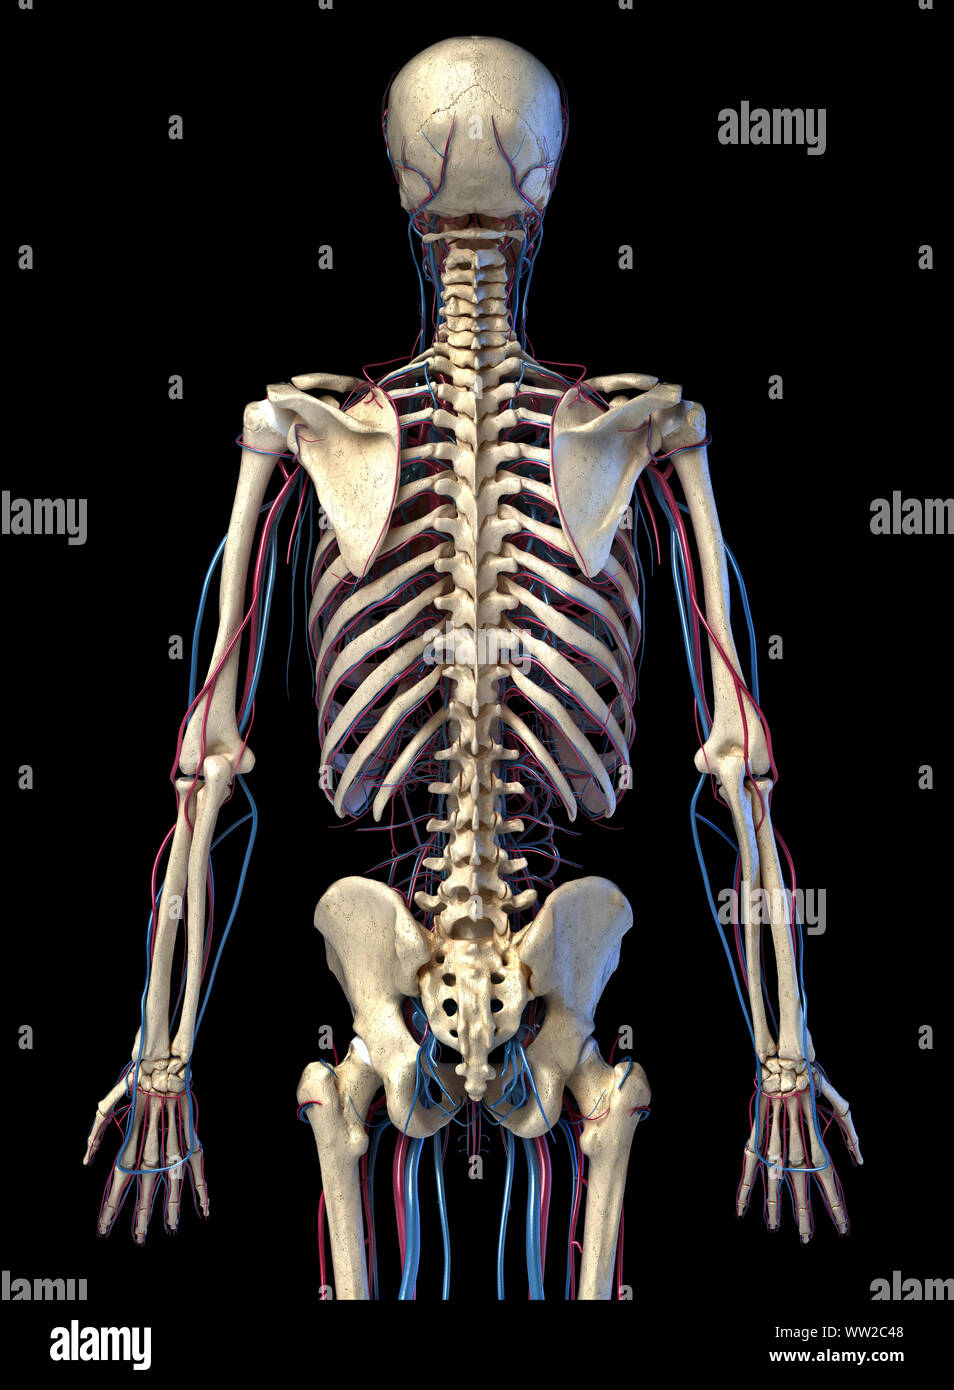 L'anatomie du corps humain. 3d illustration de squelettique 3/4 et cardiovasculaire. Vu de l'arrière. Sur fond noir. Banque D'Images